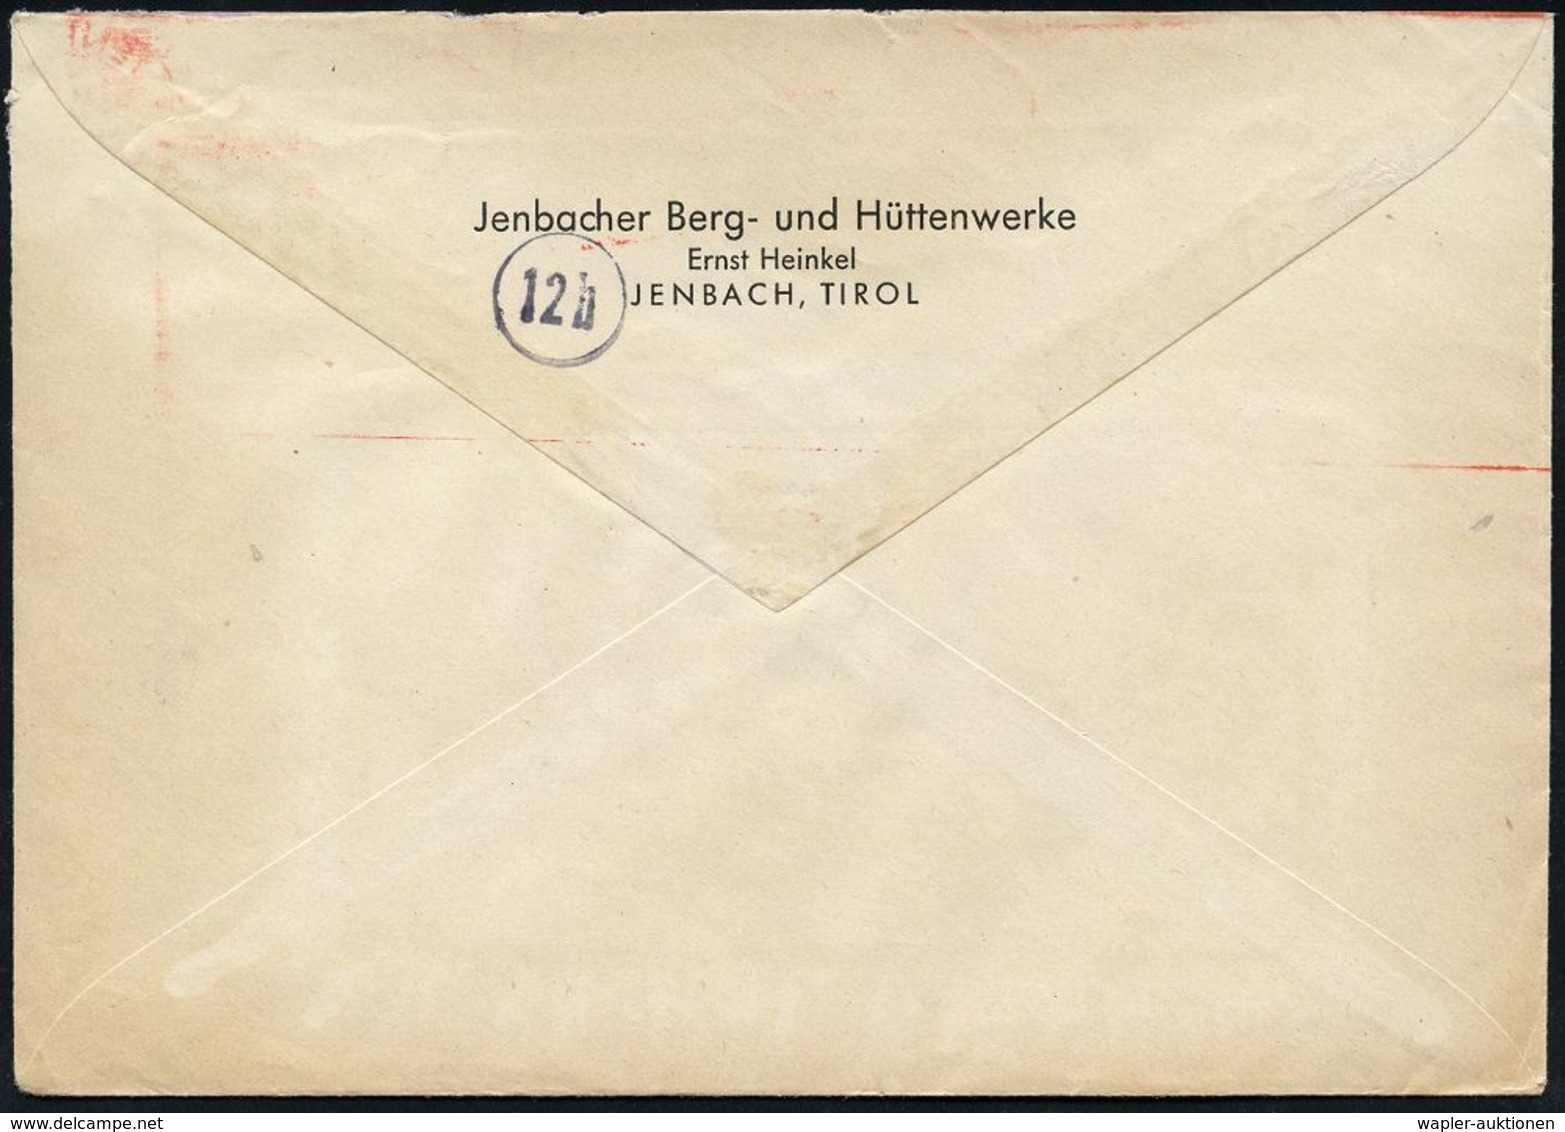 MILITÄRFLUGWESEN / MILITÄRFLUGZEUGE : JENBACH/ ERNST HEINKEL/ AG/ WERK JENBACH 1944 (23.12.) Sehr Seltener AFS = Heinkel - Avions